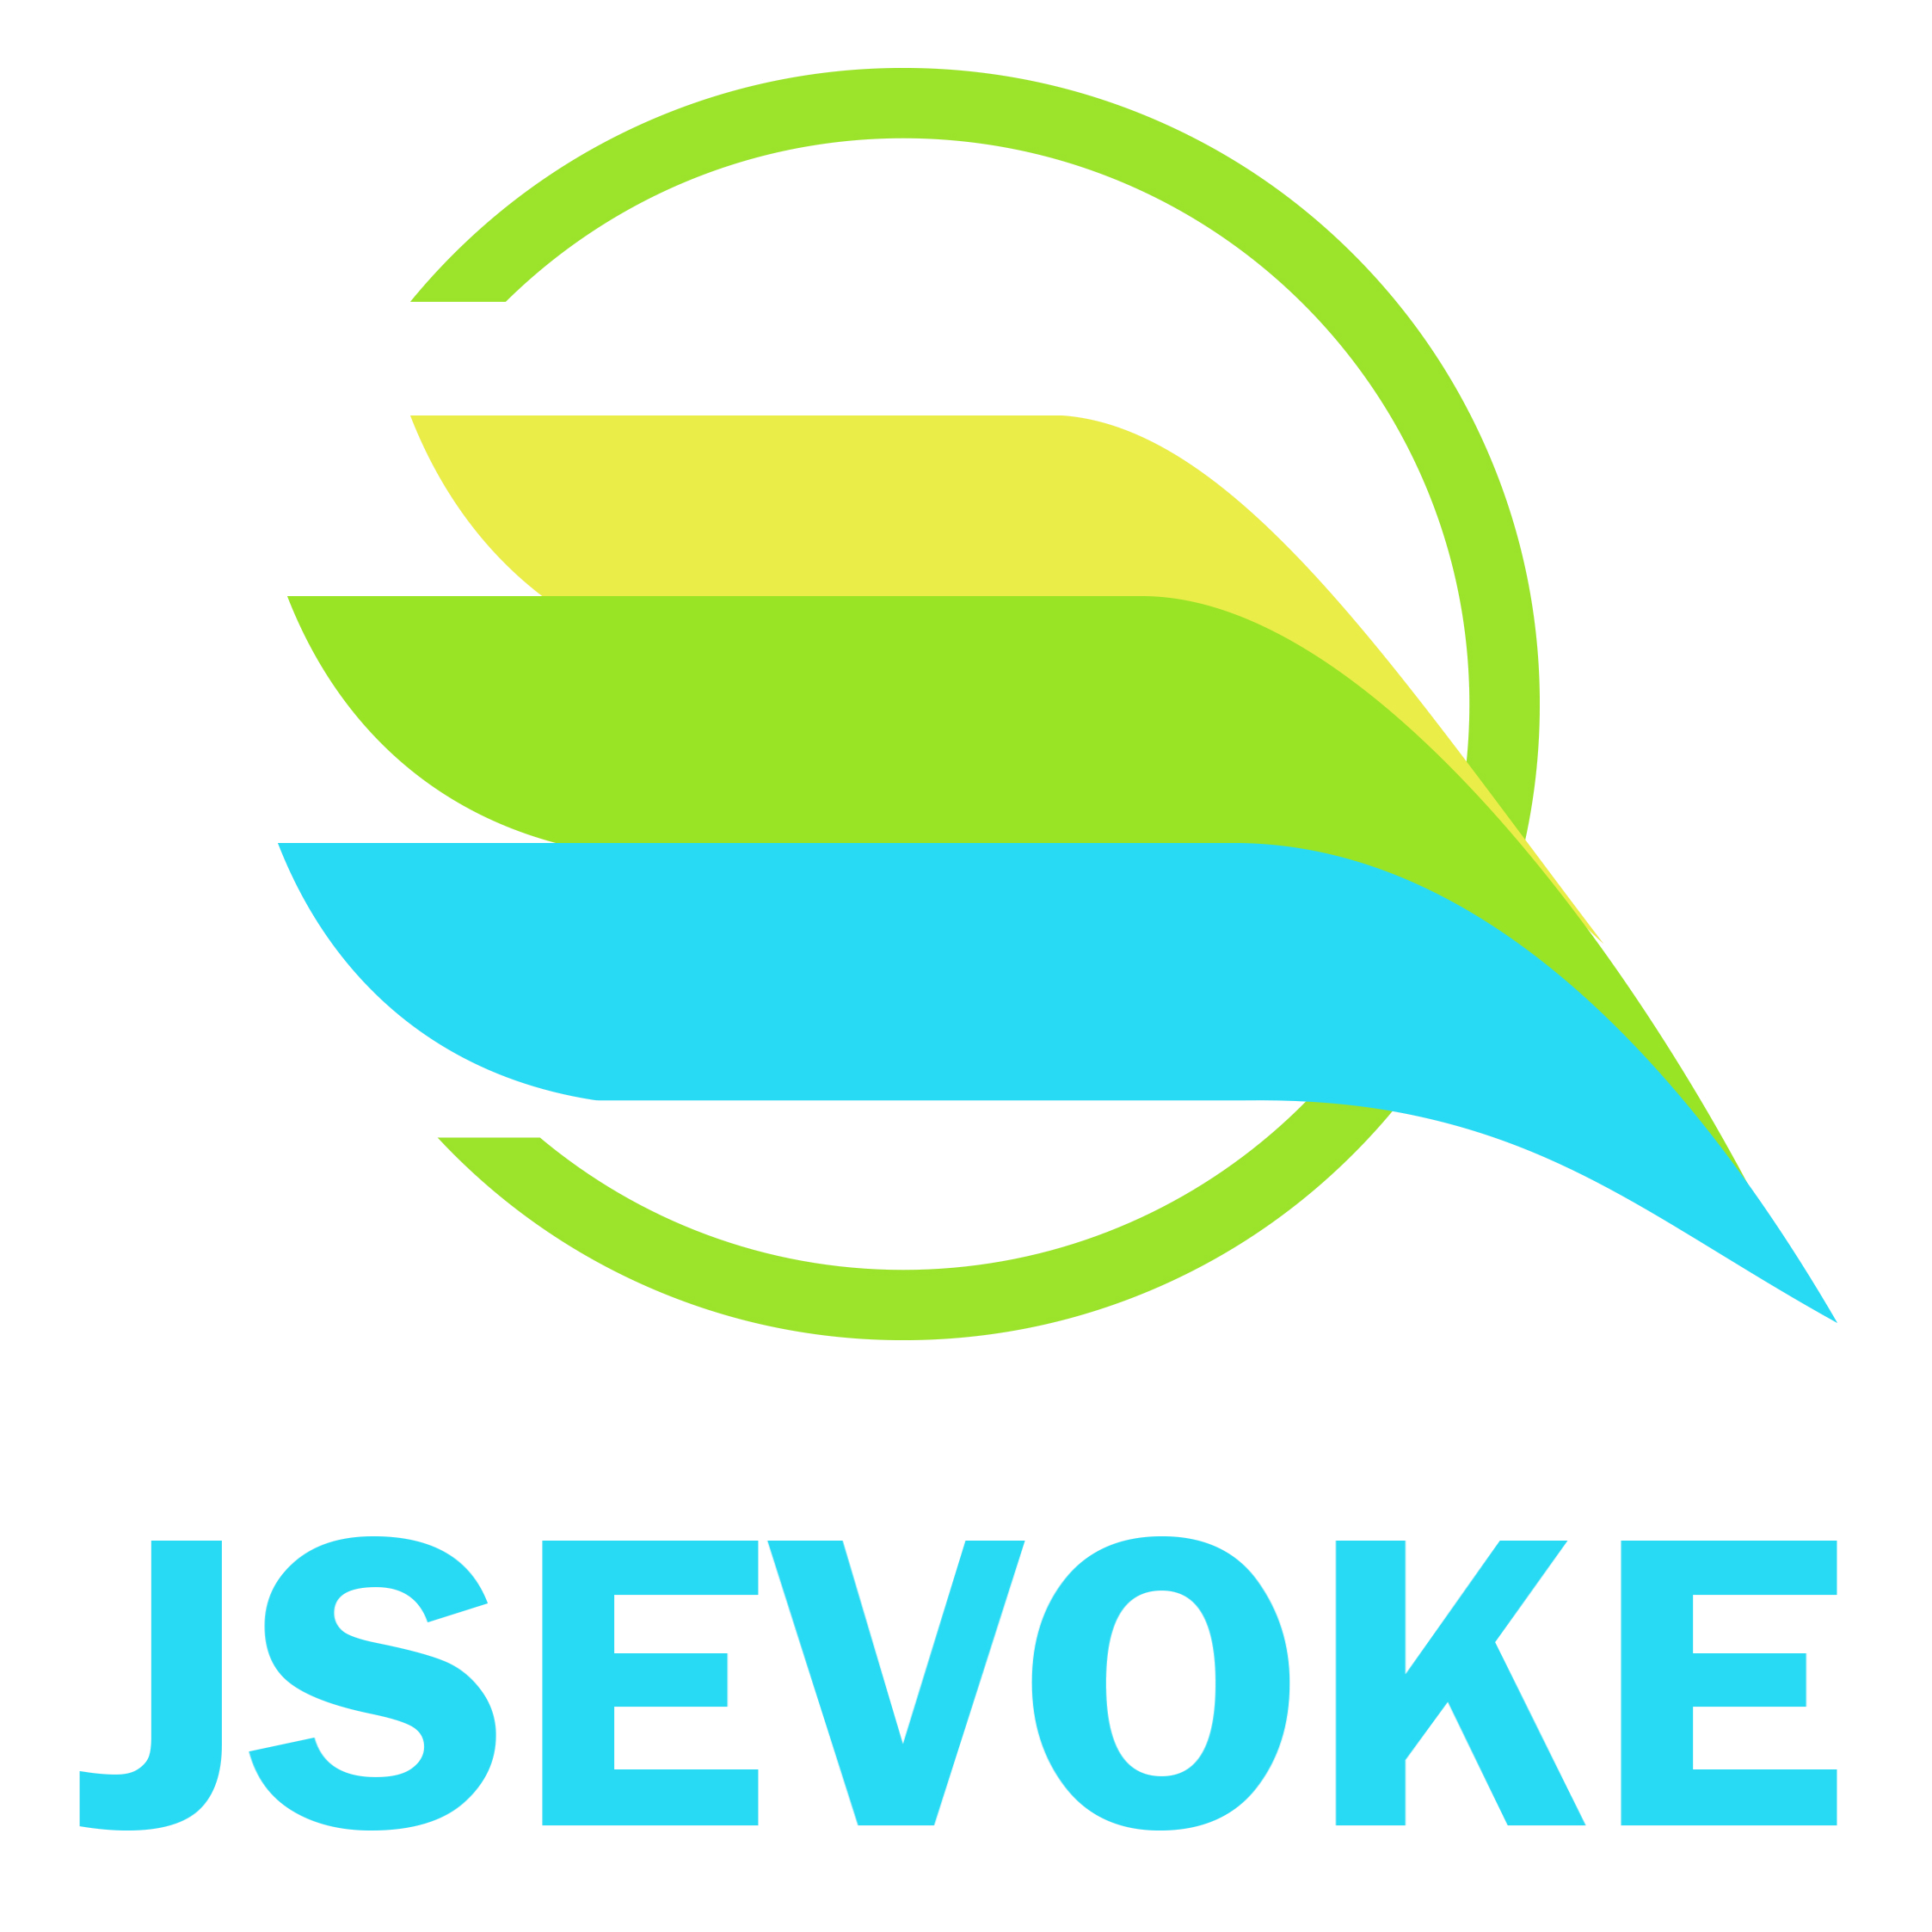 jsevoke logo clear